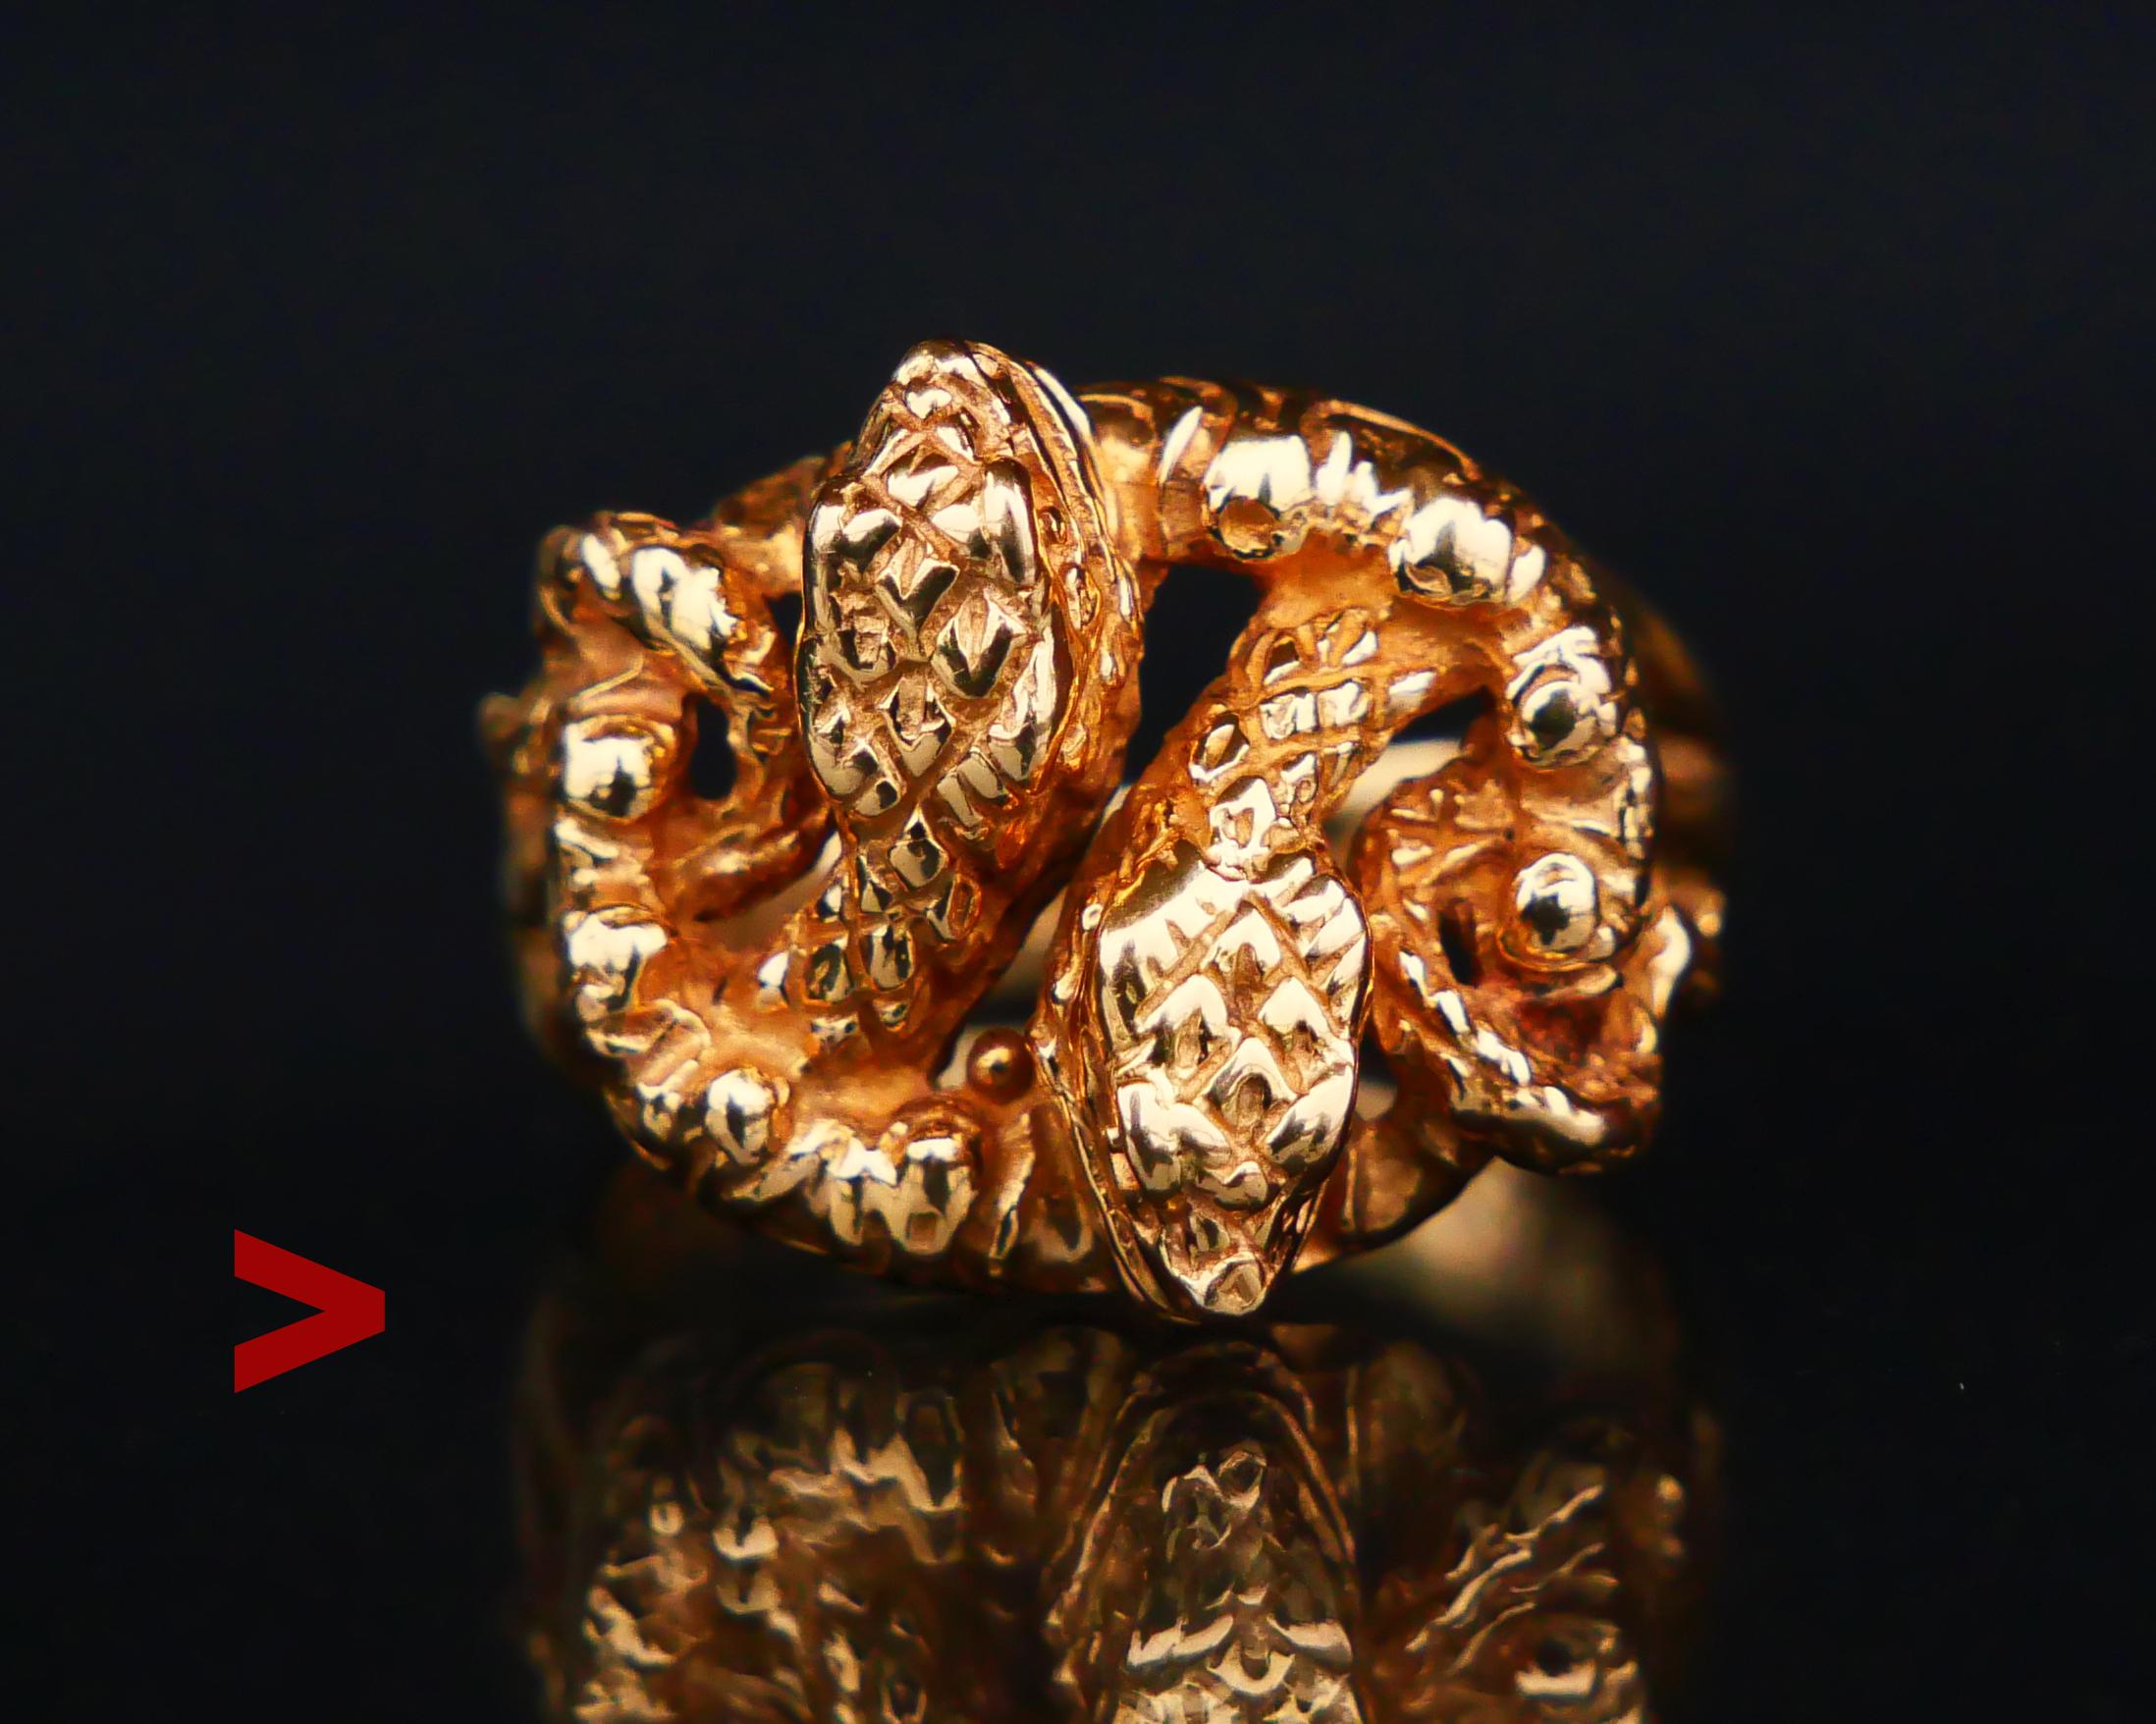 Antiker Ring für Männer oder Frauen in Form von ineinander verschlungenen Schlangen aus massivem 18K Gelbgold. Gegossene Körper von Reptilien mit detaillierten Schuppen, Augen und Zähnen.

Das Design dieses Rings ist unisex, er sieht an männlichen